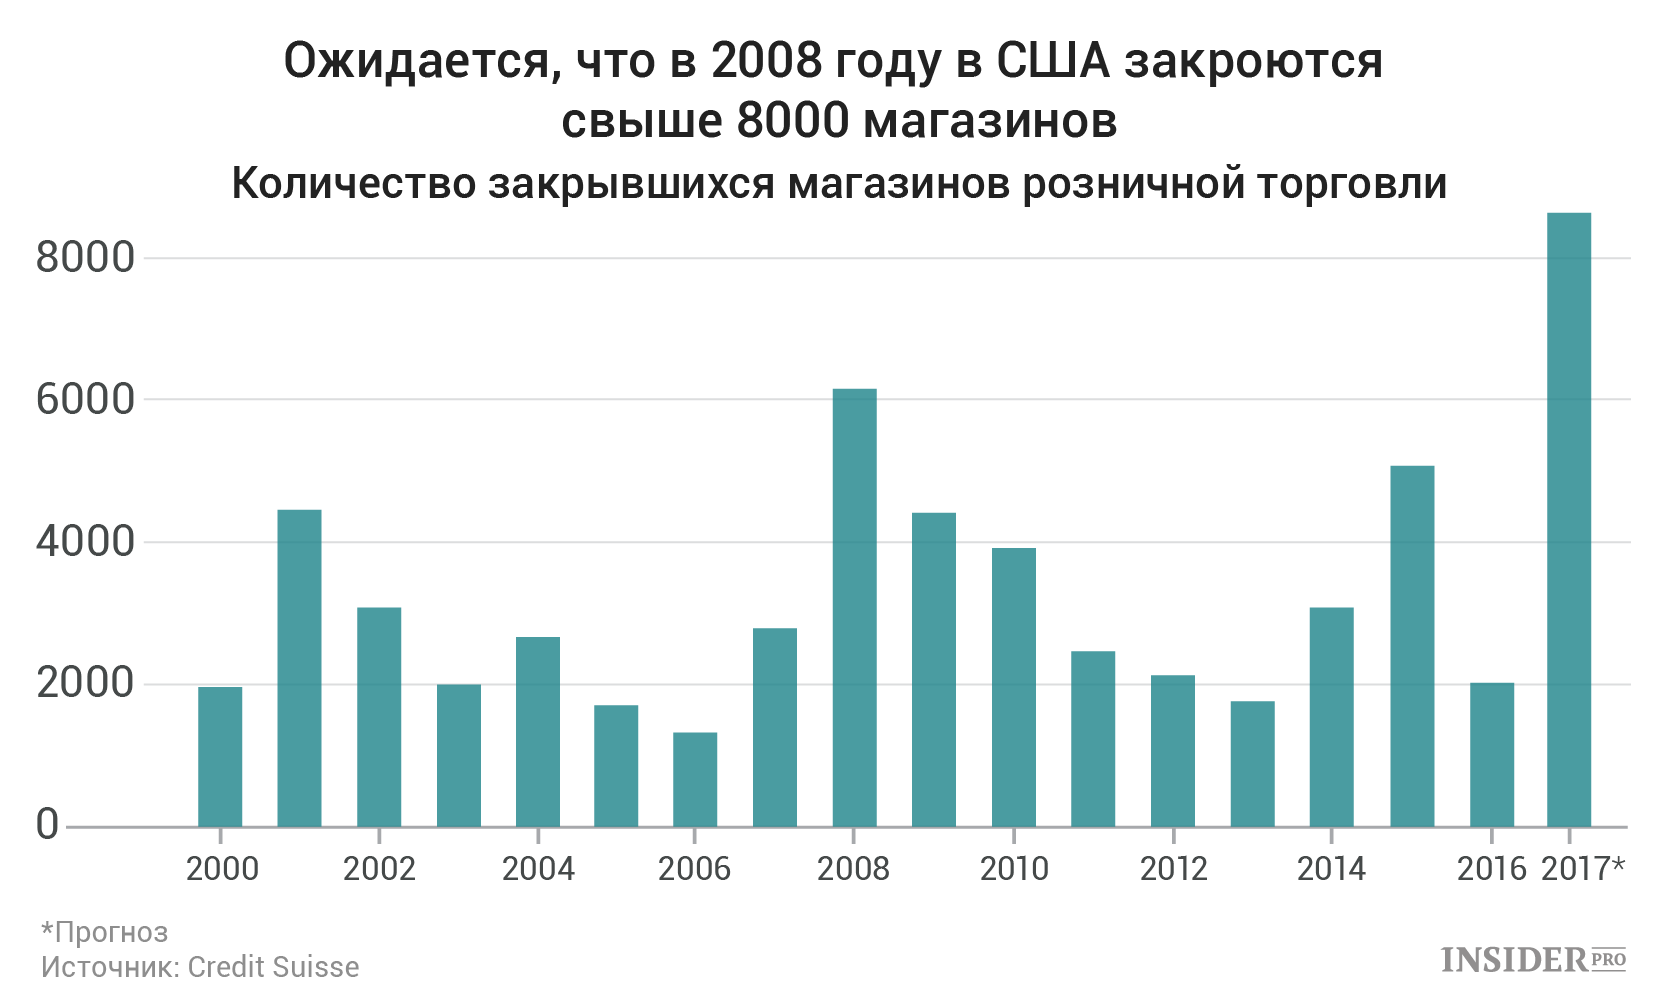 На сколько лет закрыли. Сколько магазинов в Москве. Количество магазинов в Москве в 2010 году. 2000 Год. Сколько школ закрыли в Москве с 2000 года.